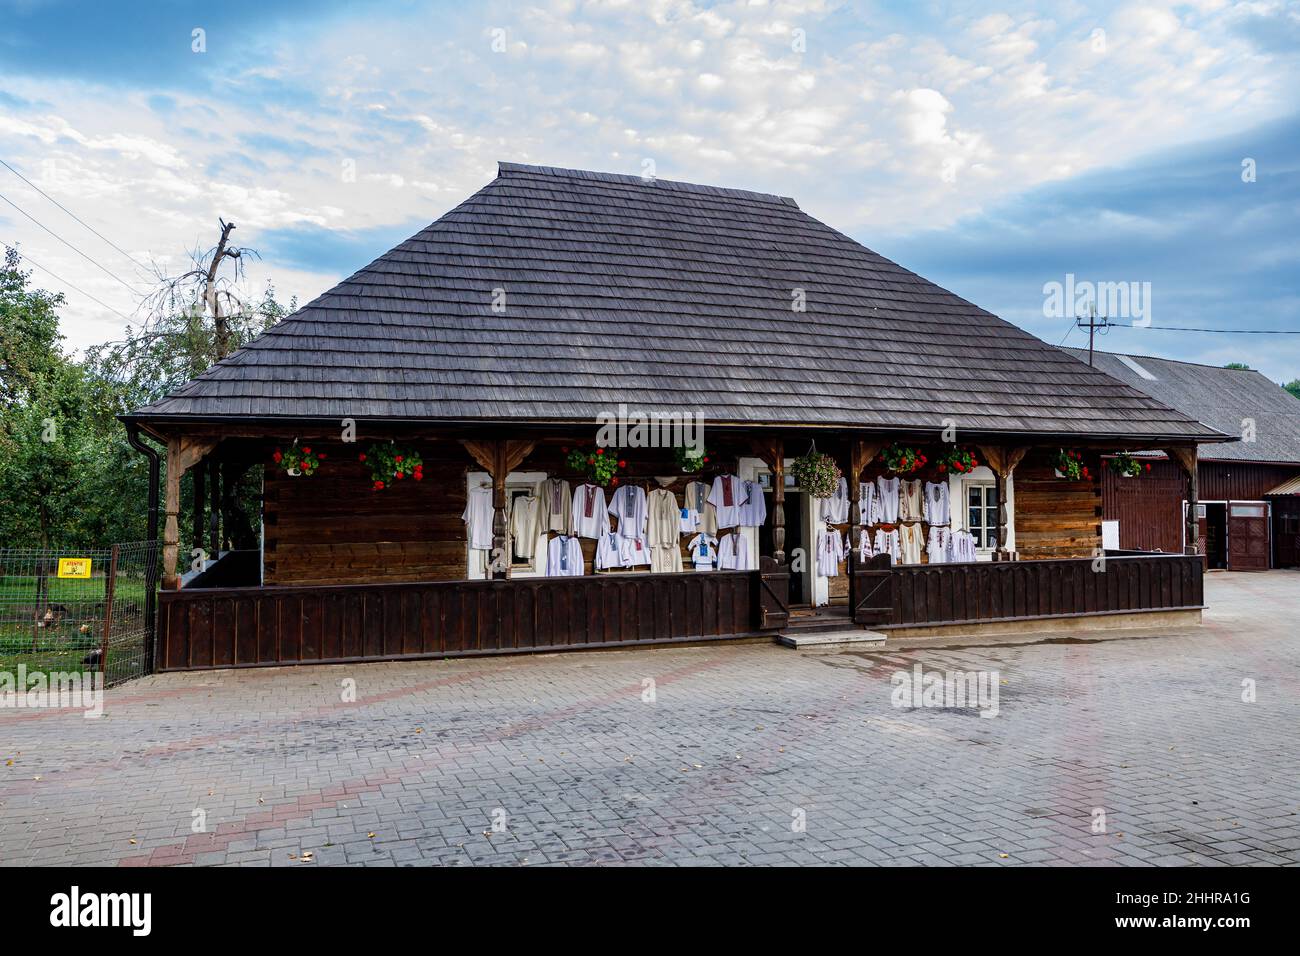 The tourist market of Humor in Romania Stock Photo